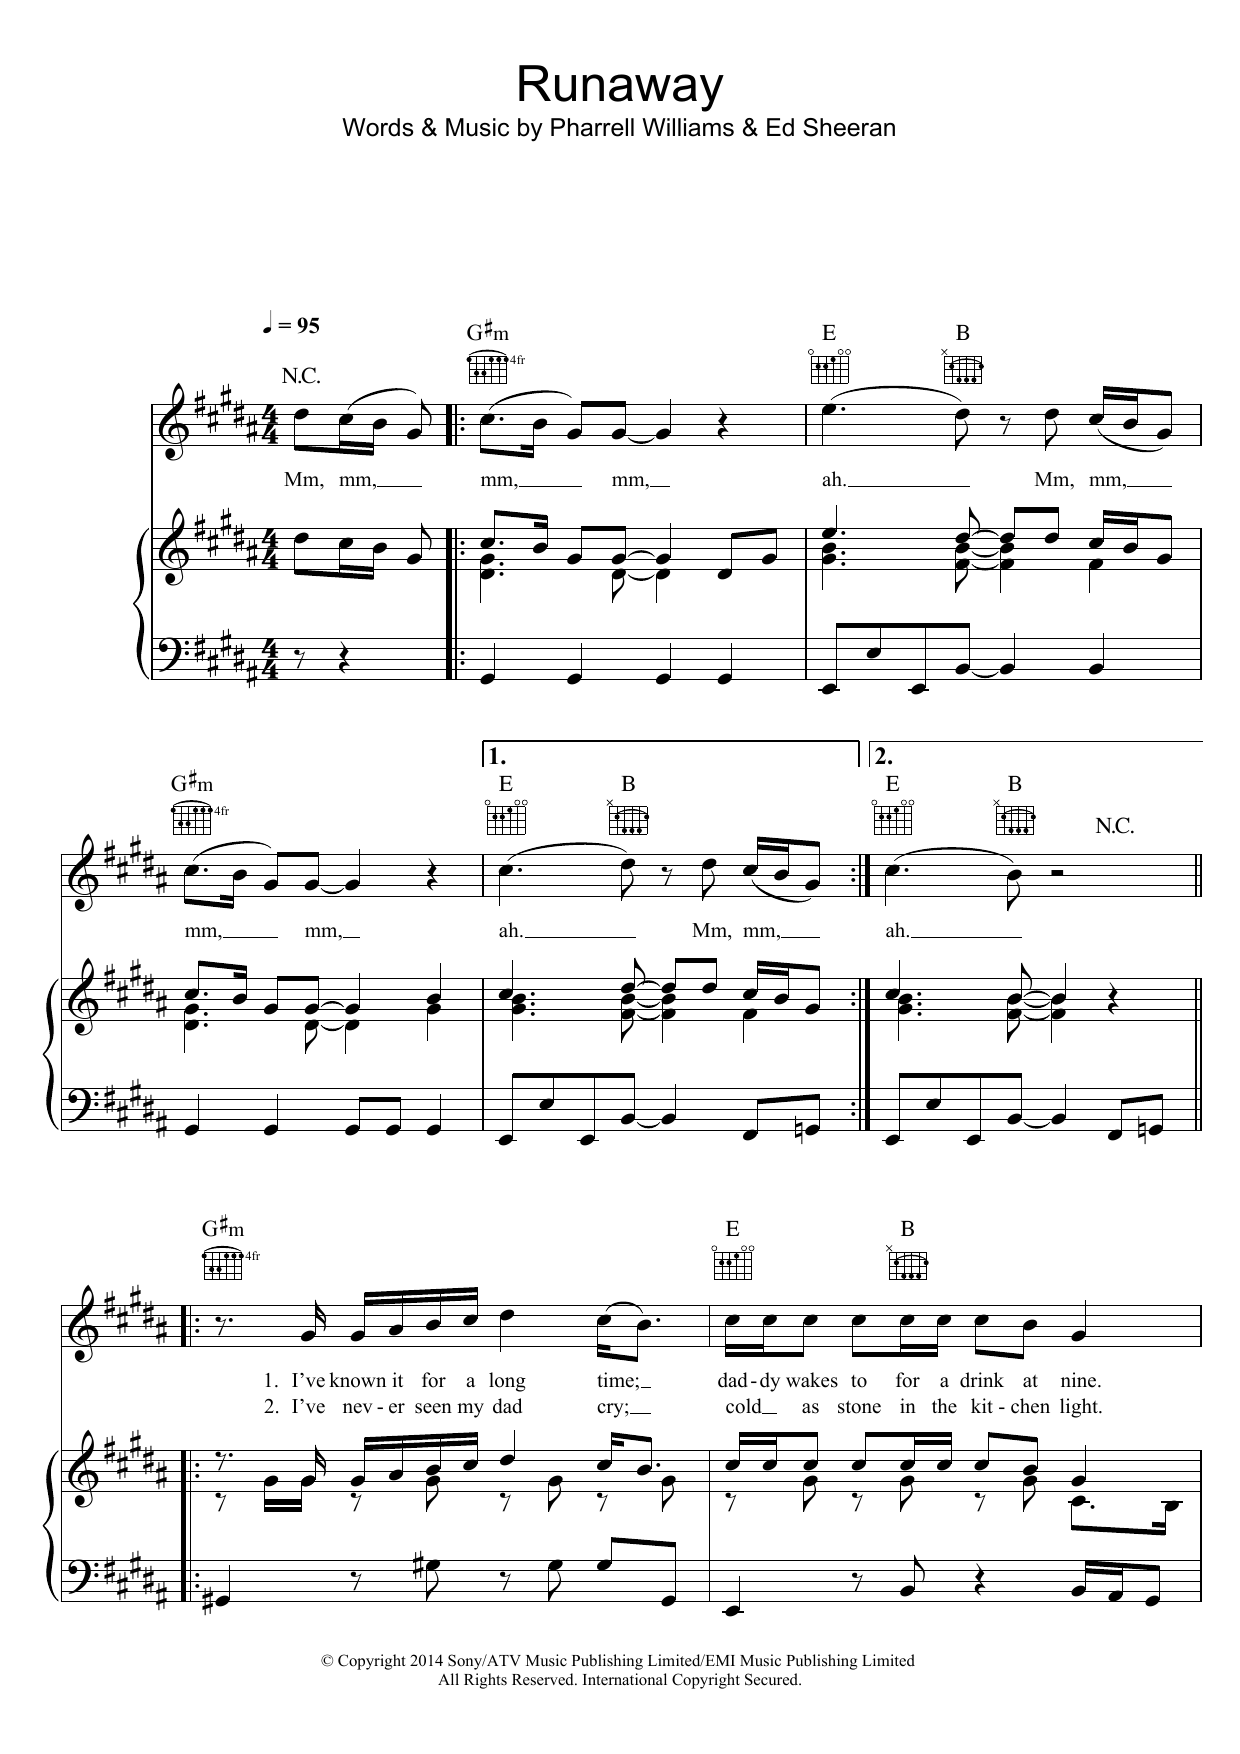 Ed Sheeran Runaway Sheet Music Notes & Chords for Lyrics & Chords - Download or Print PDF